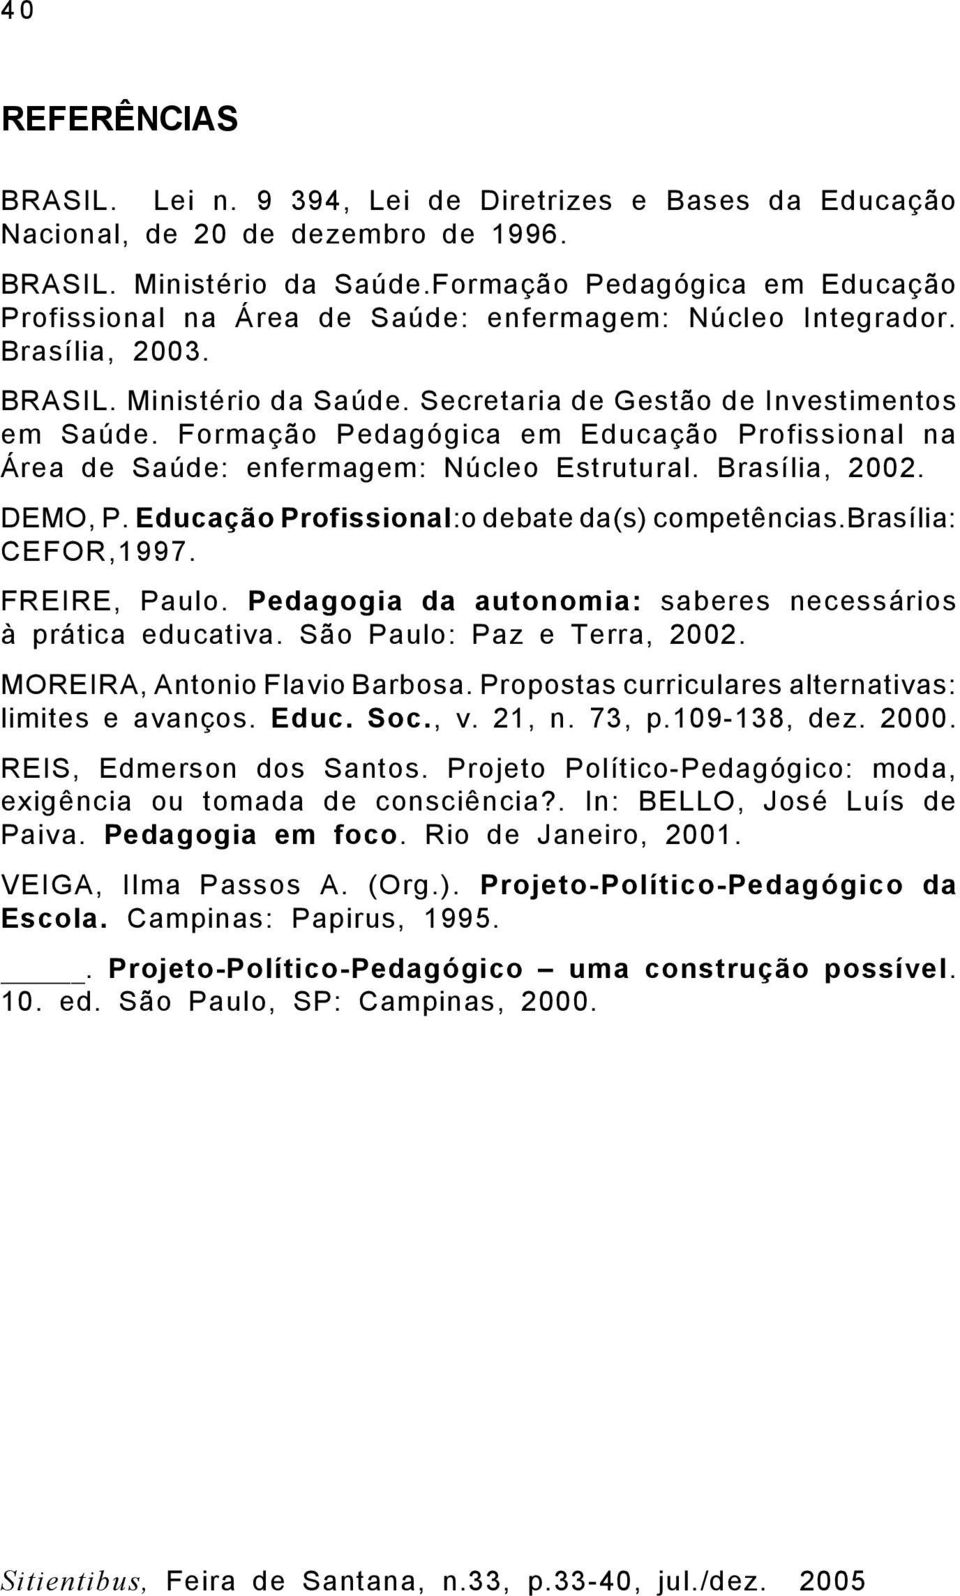 Formação Pedagógica em Educação Profissional na Área de Saúde: enfermagem: Núcleo Estrutural. Brasília, 2002. DEMO, P. Educação Profissional:o debate da(s) competências.brasília: CEFOR,1997.